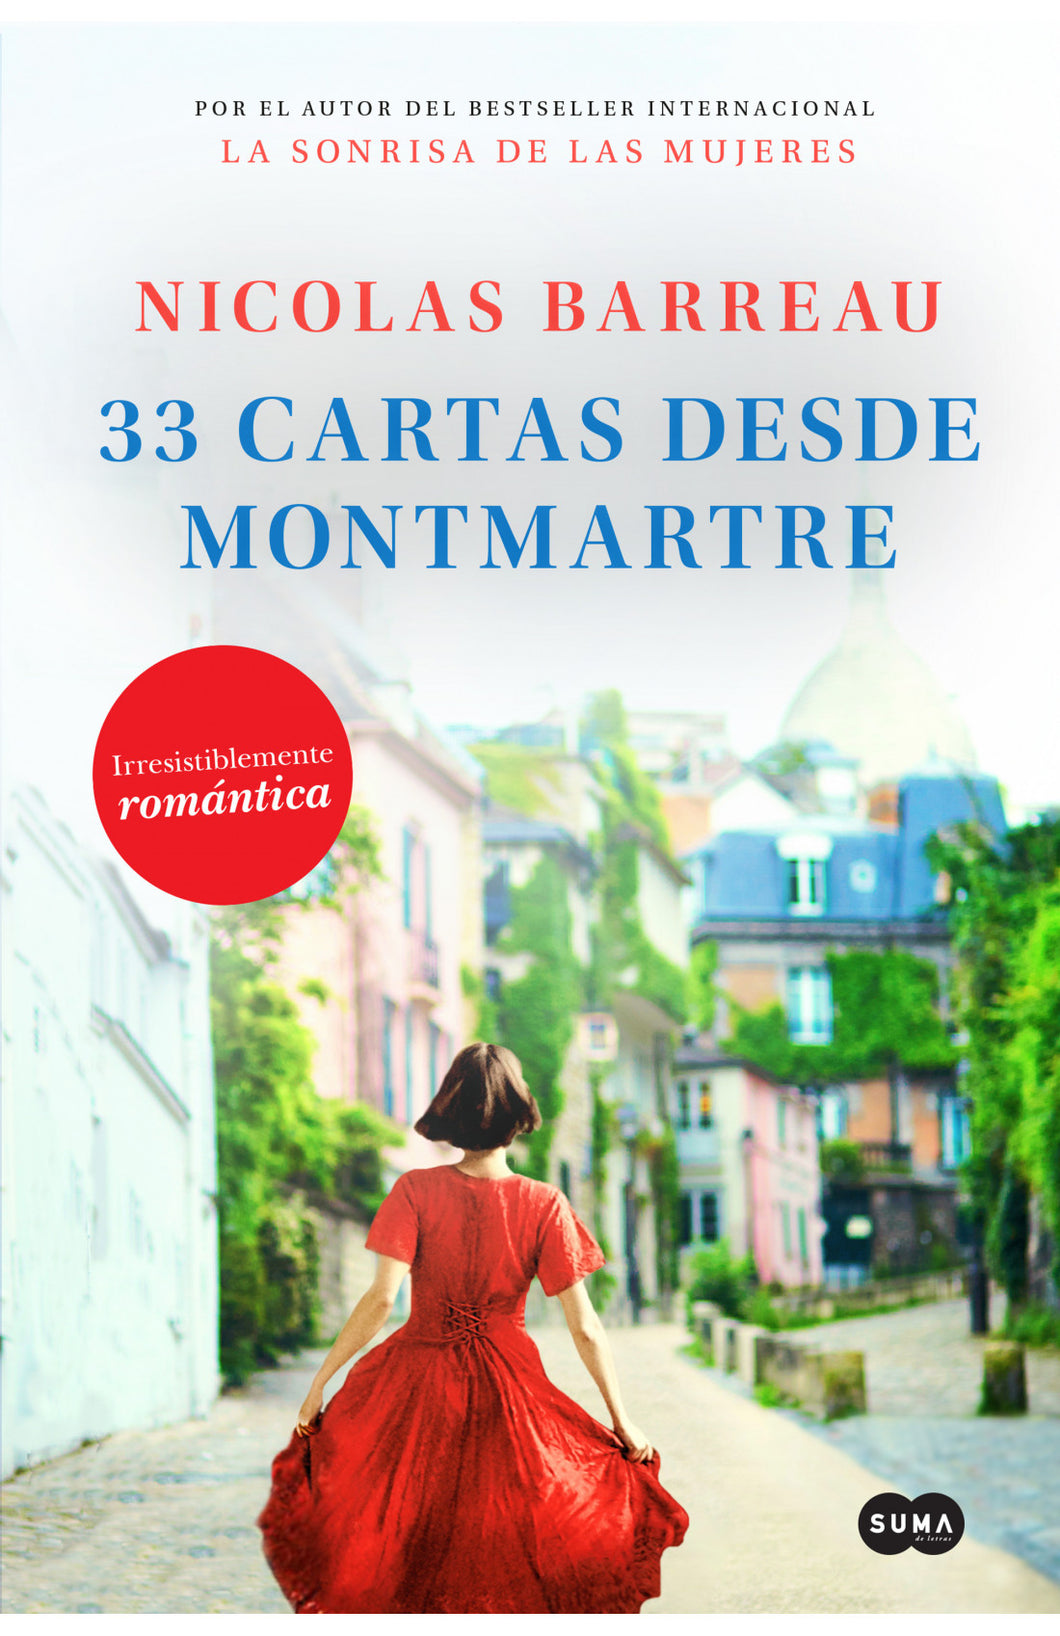 33 CARTAS DESDE MONTMARTRE - Nicolas Barreau